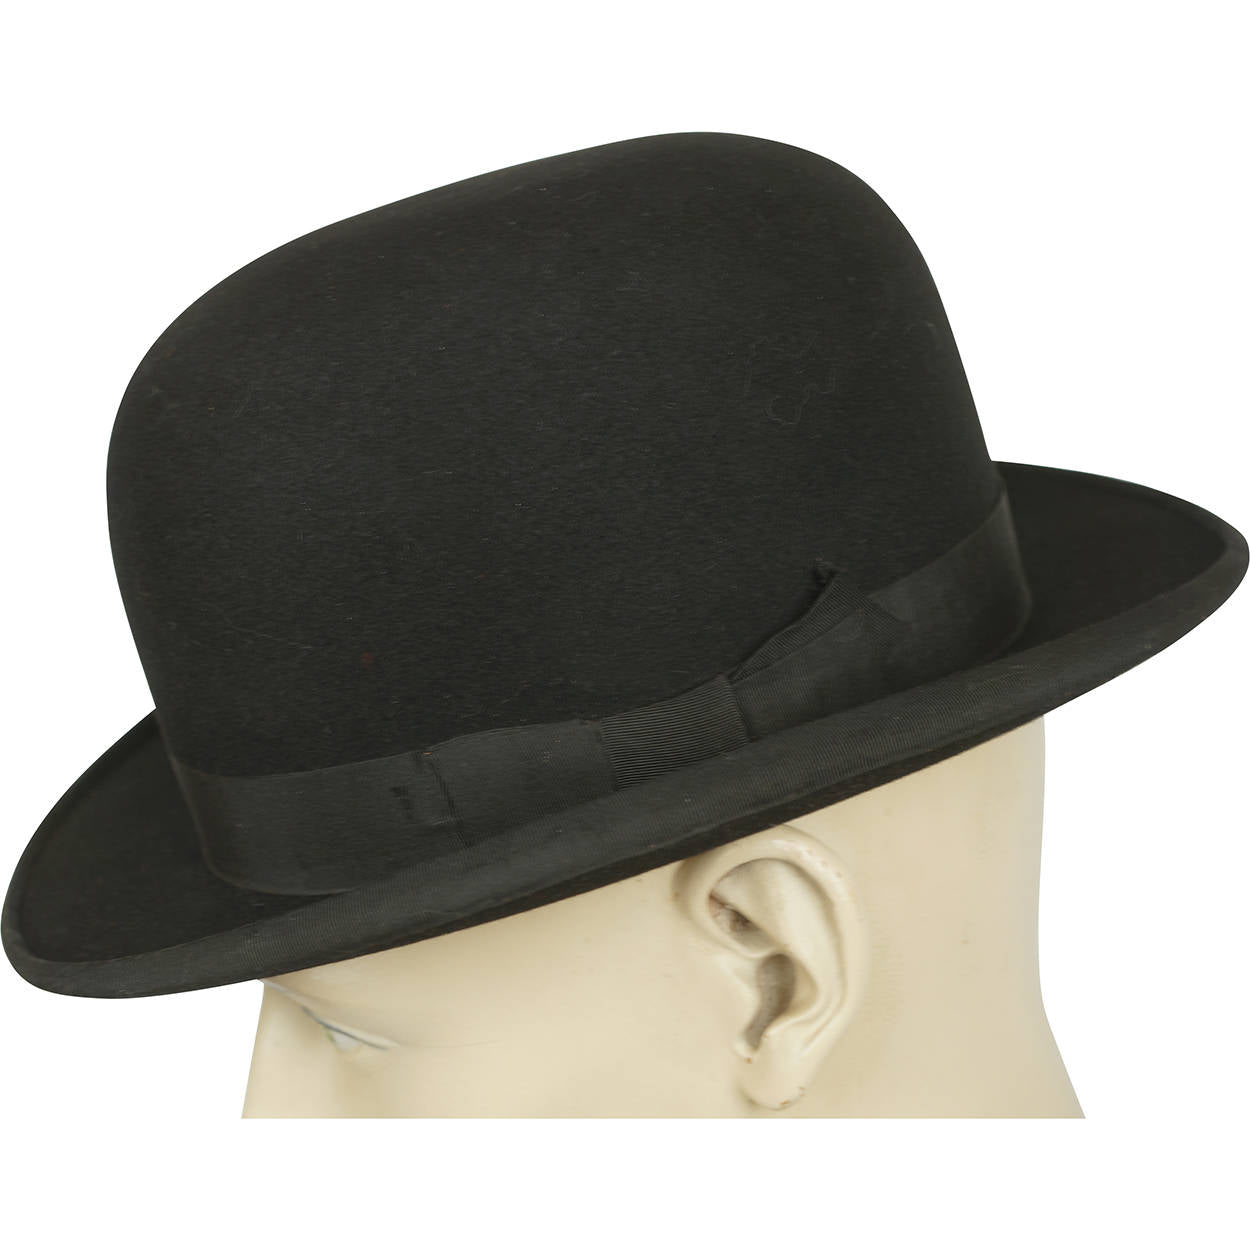 Vintage Men's Hat - Black